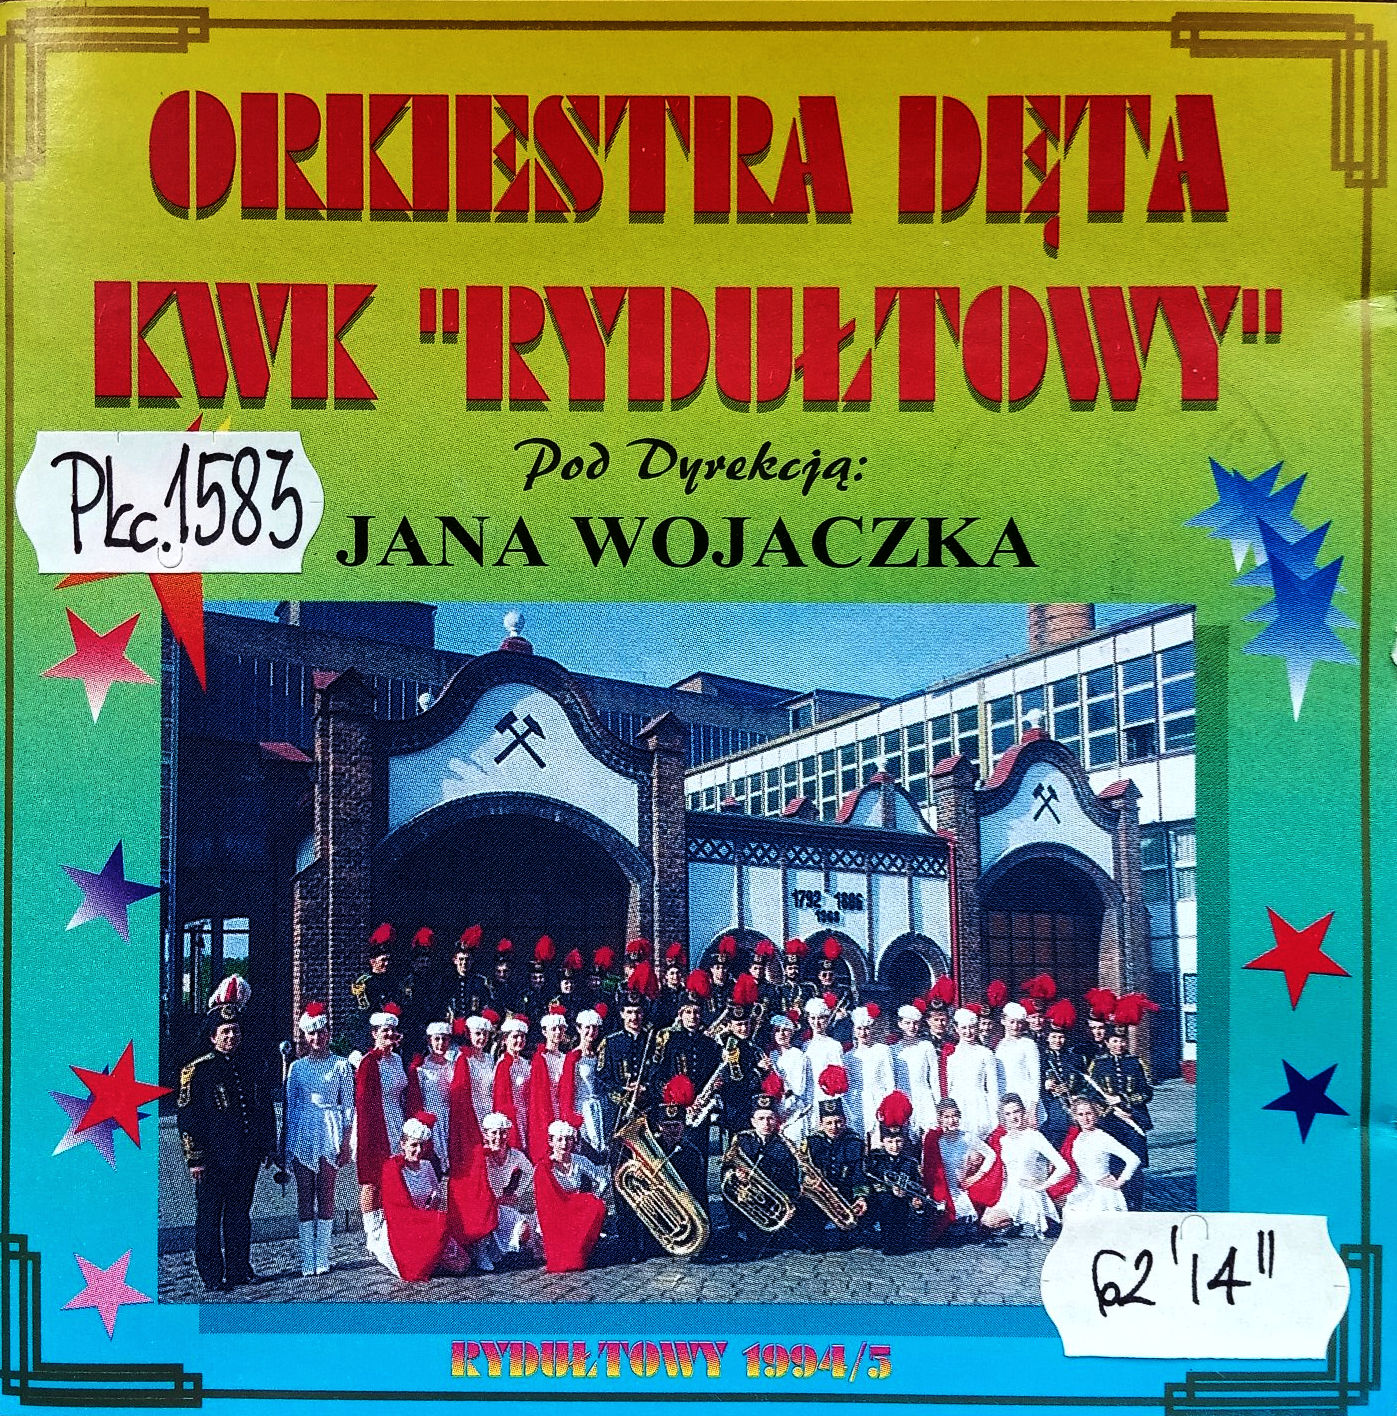 ORKIESTRA DĘTA KWK “Rydułtowy” – Orkiestra Dęta KWK “Rydułtowy” 1994/5